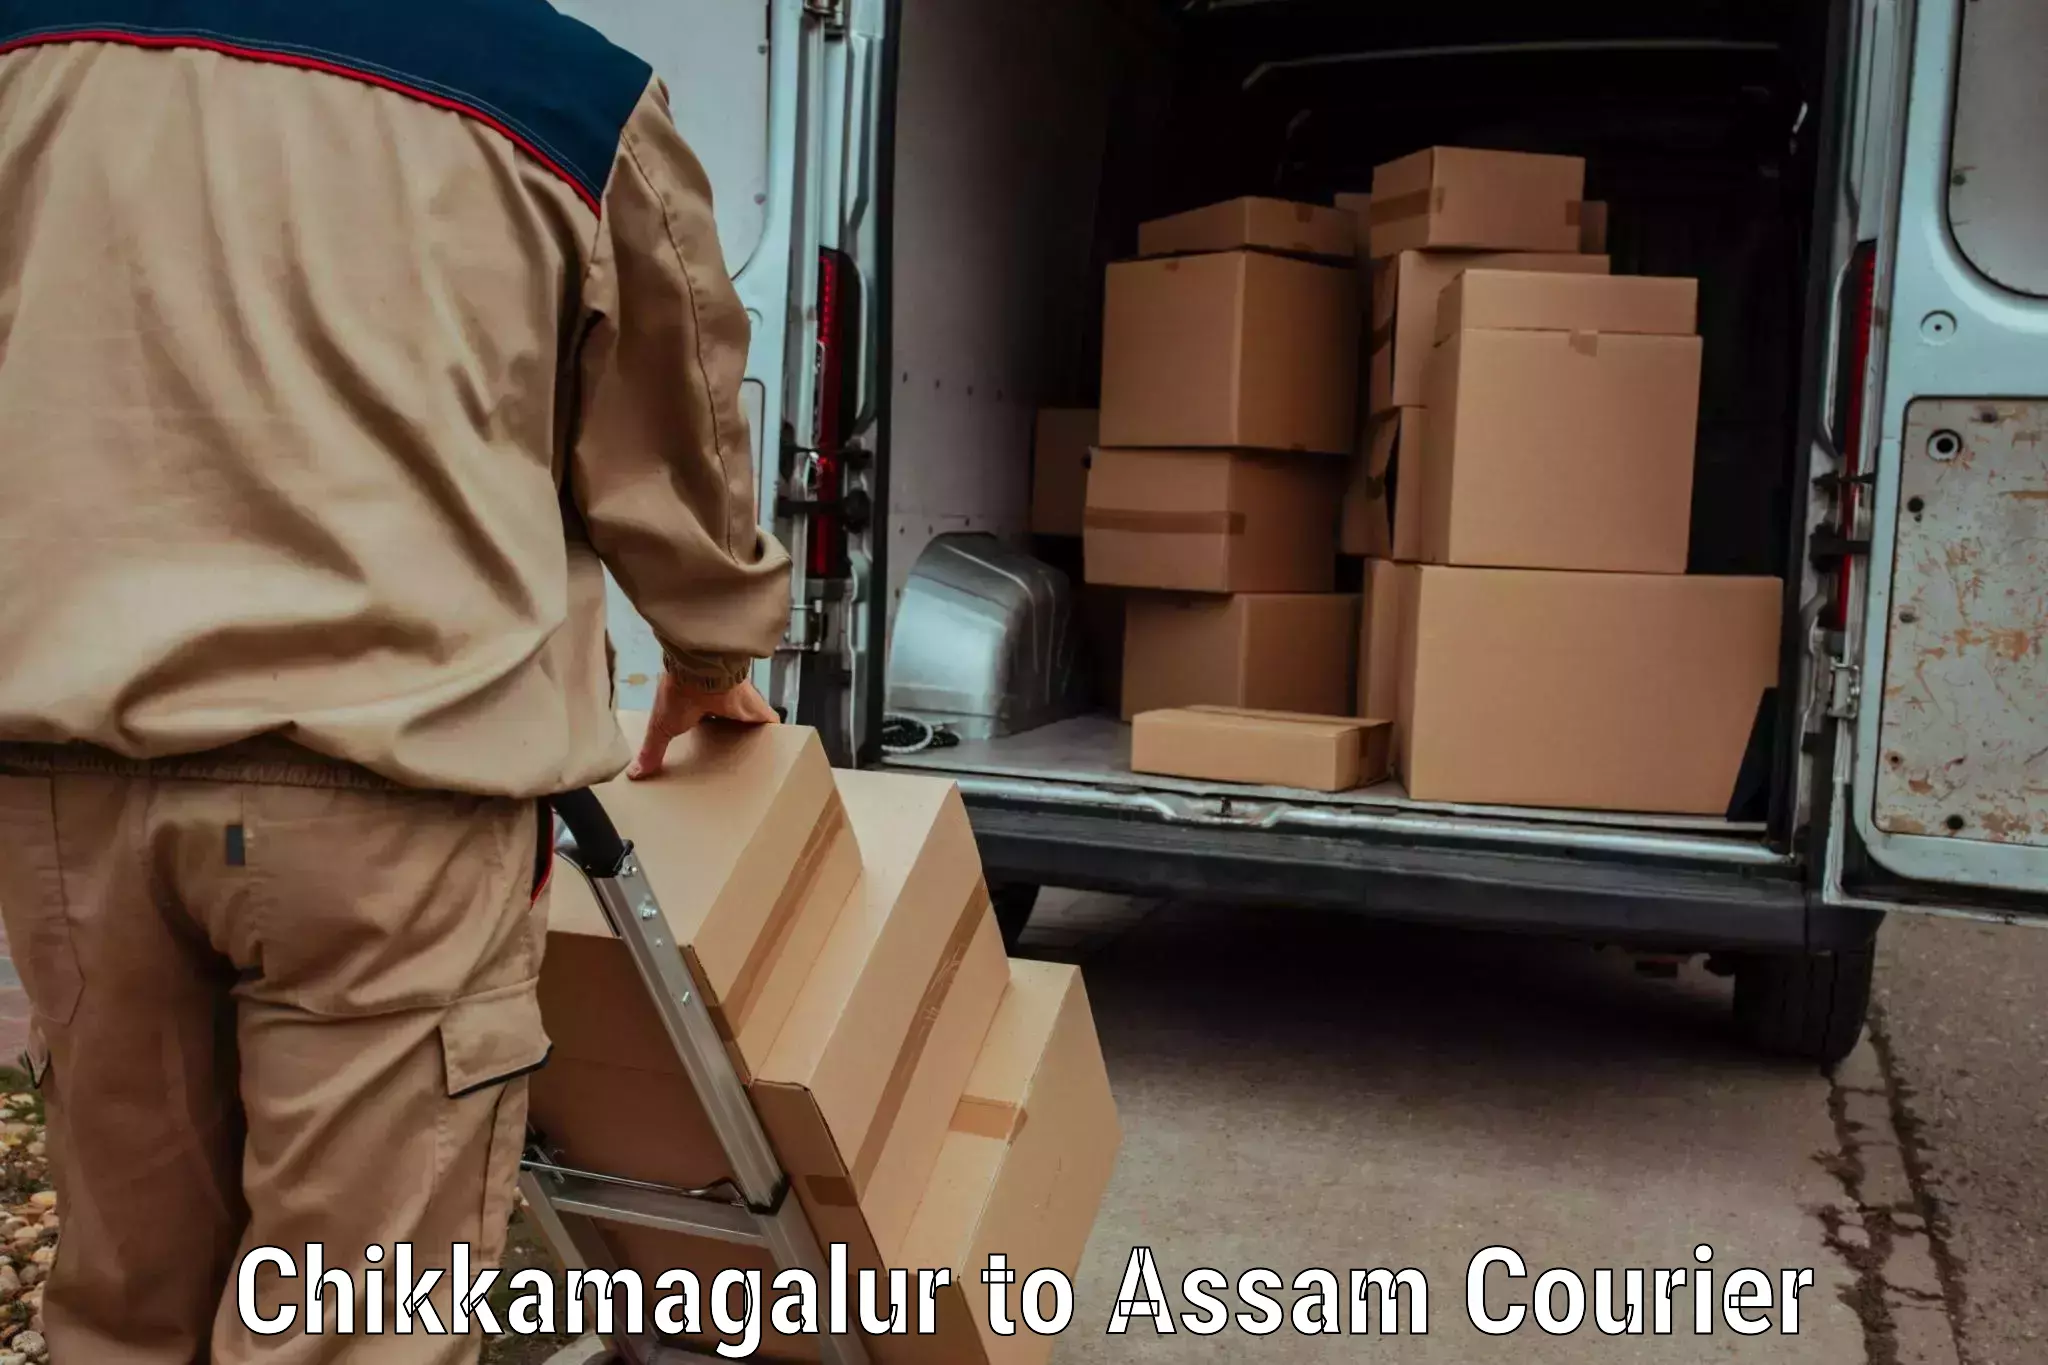 Express package handling Chikkamagalur to Assam